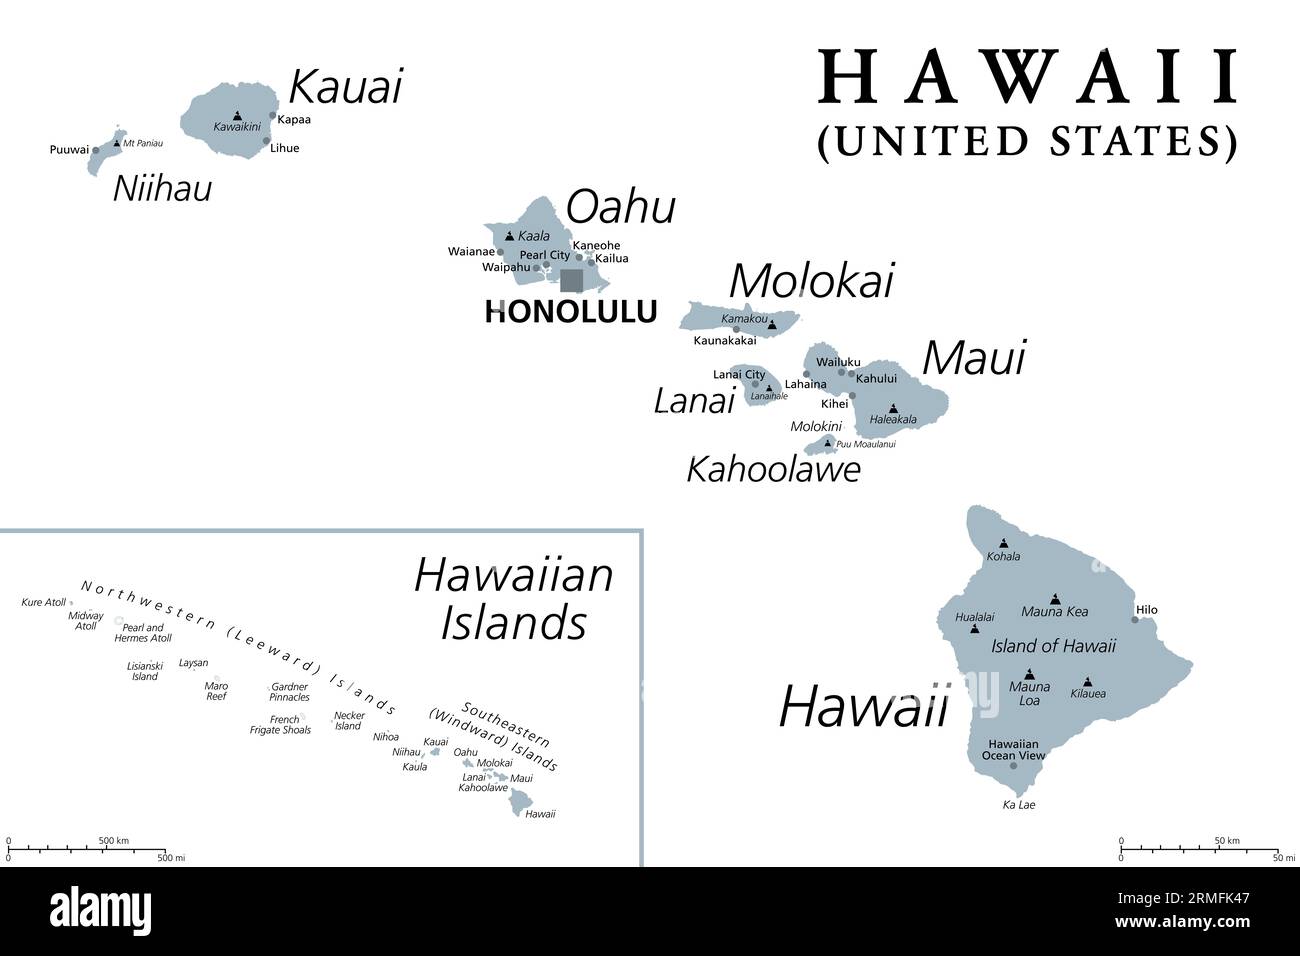 Islas hawaianas, mapa político gris. Archipiélago de 8 islas volcánicas principales, varios atolones y numerosos islotes más pequeños en el Océano Pacífico Norte. Foto de stock